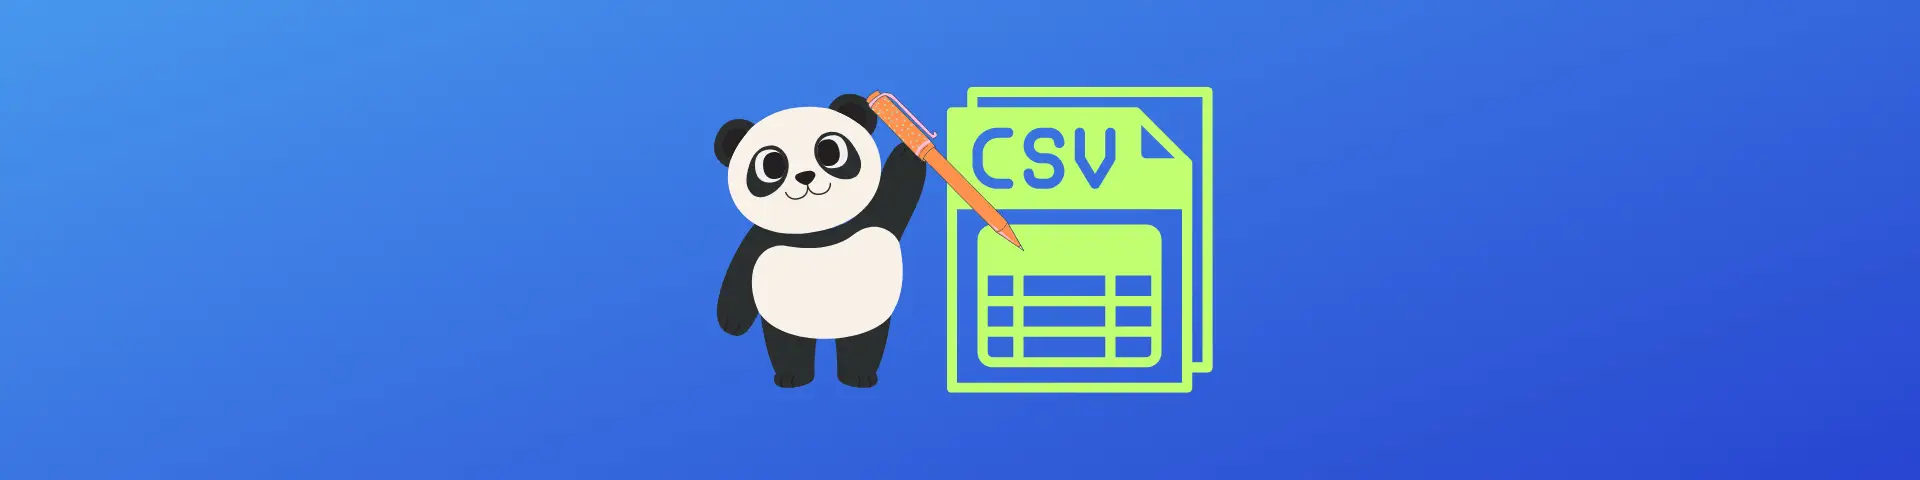 Write CSV file with Pandas